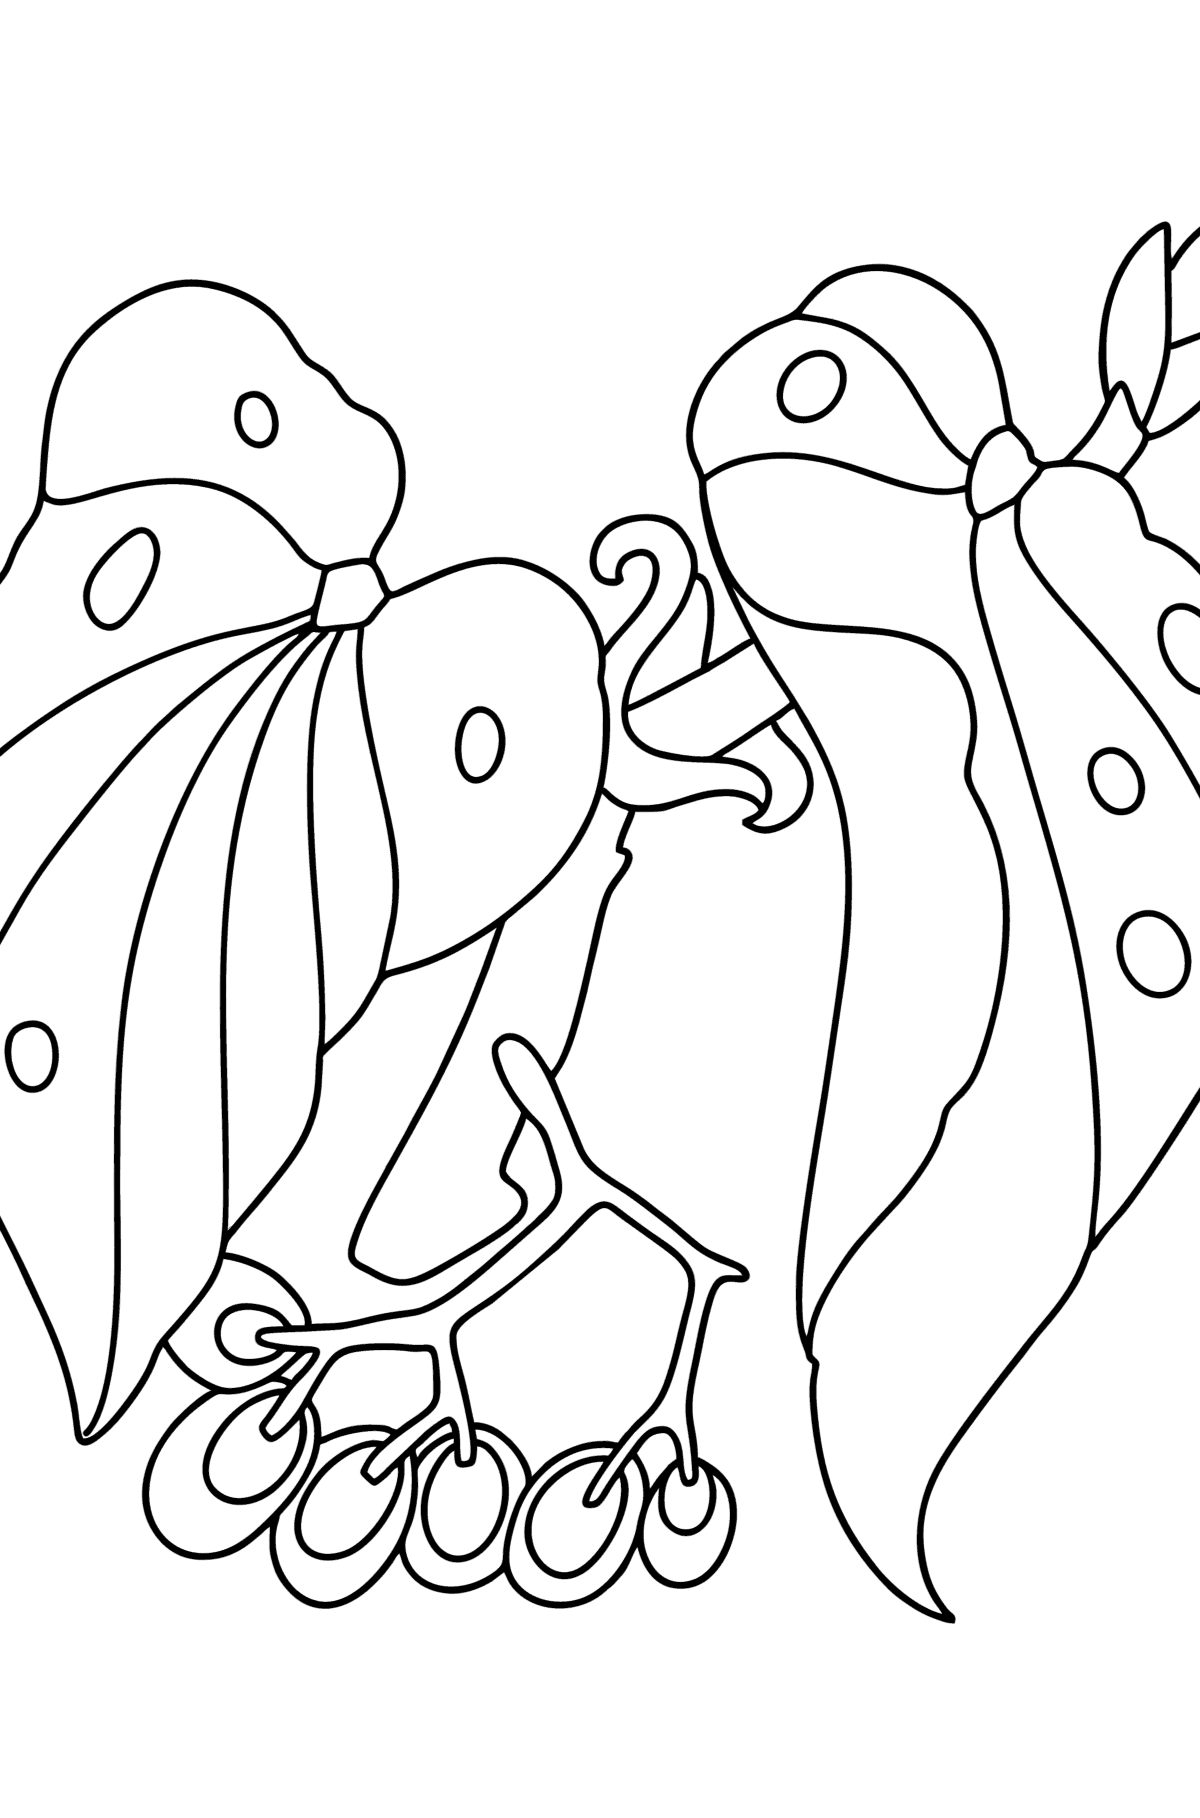 Kolorowanka Begonia - Kolorowanki dla dzieci